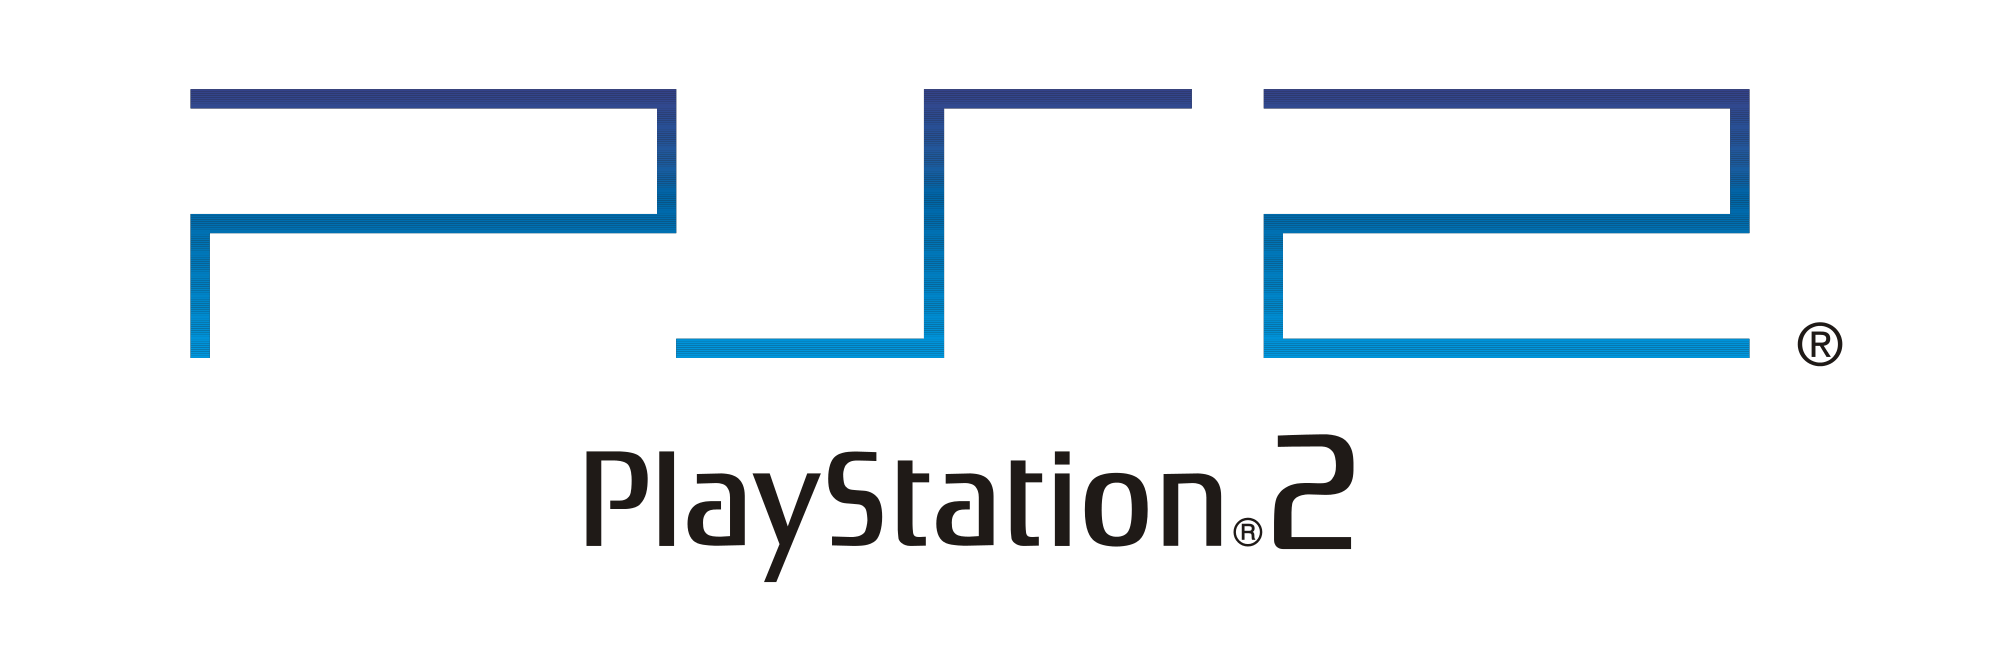 PlayStation 2 Logo - Playstation2 Logo.svg